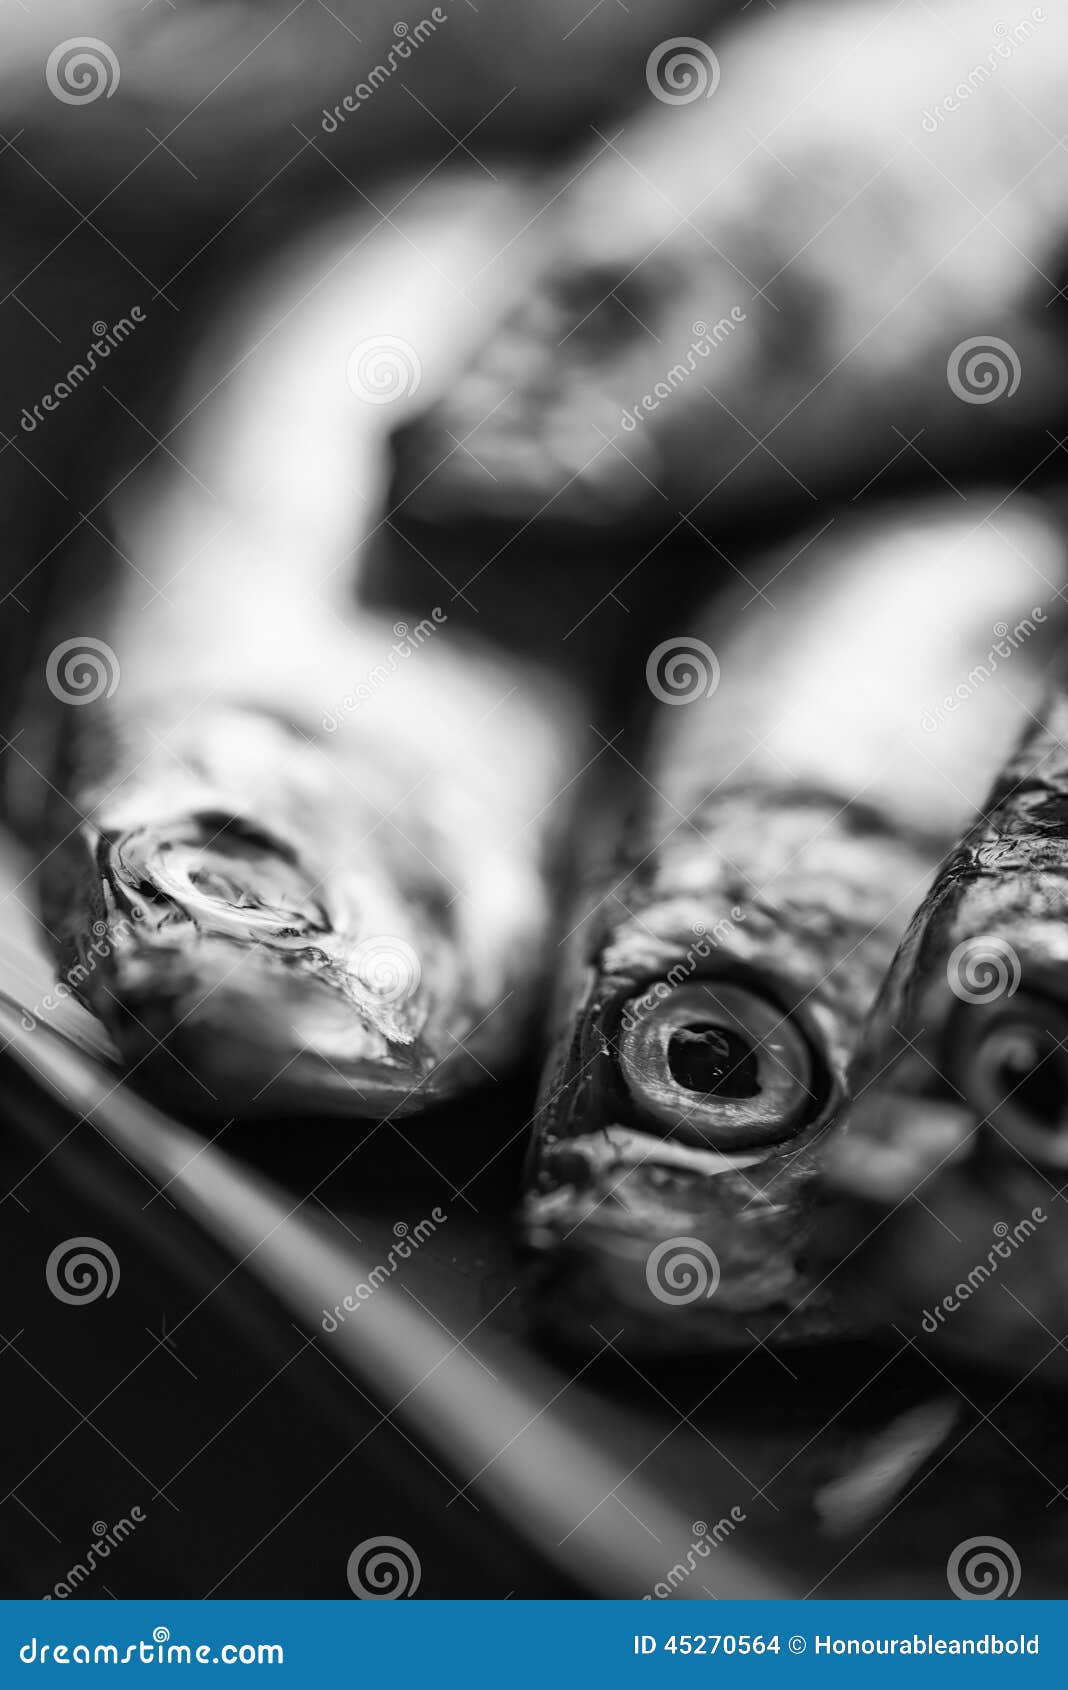 Frische geschmackvolle rohe Sprotten auf dem Servierteller Schwarzweiss. Frische Sprottenfische auf dem Servierteller Schwarzweiss